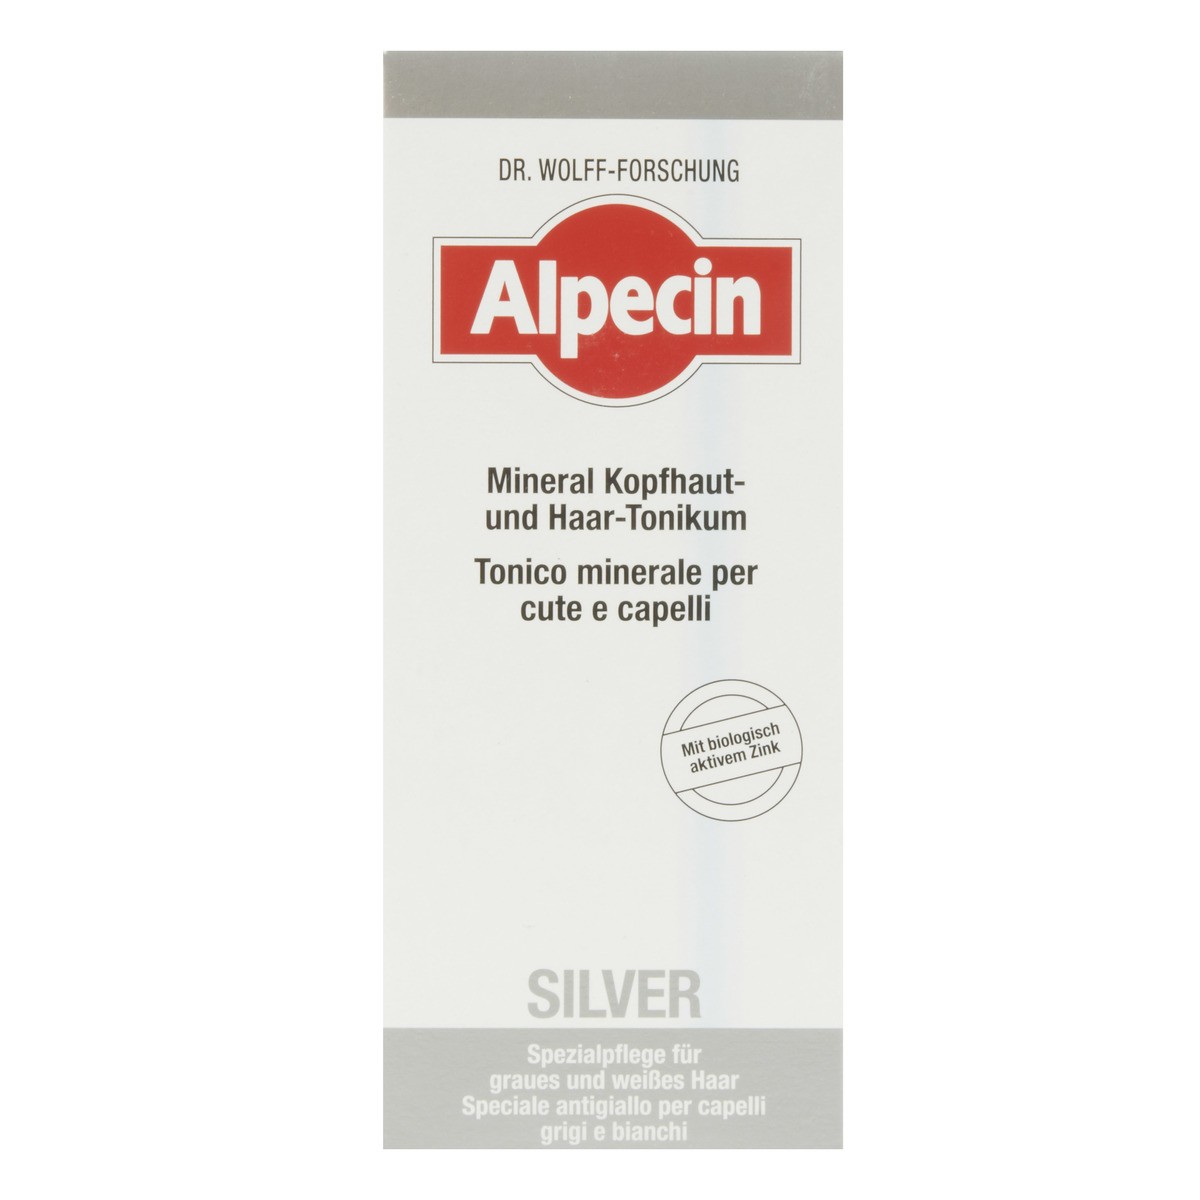 Alpecin Tonico minerale per cute e capelli